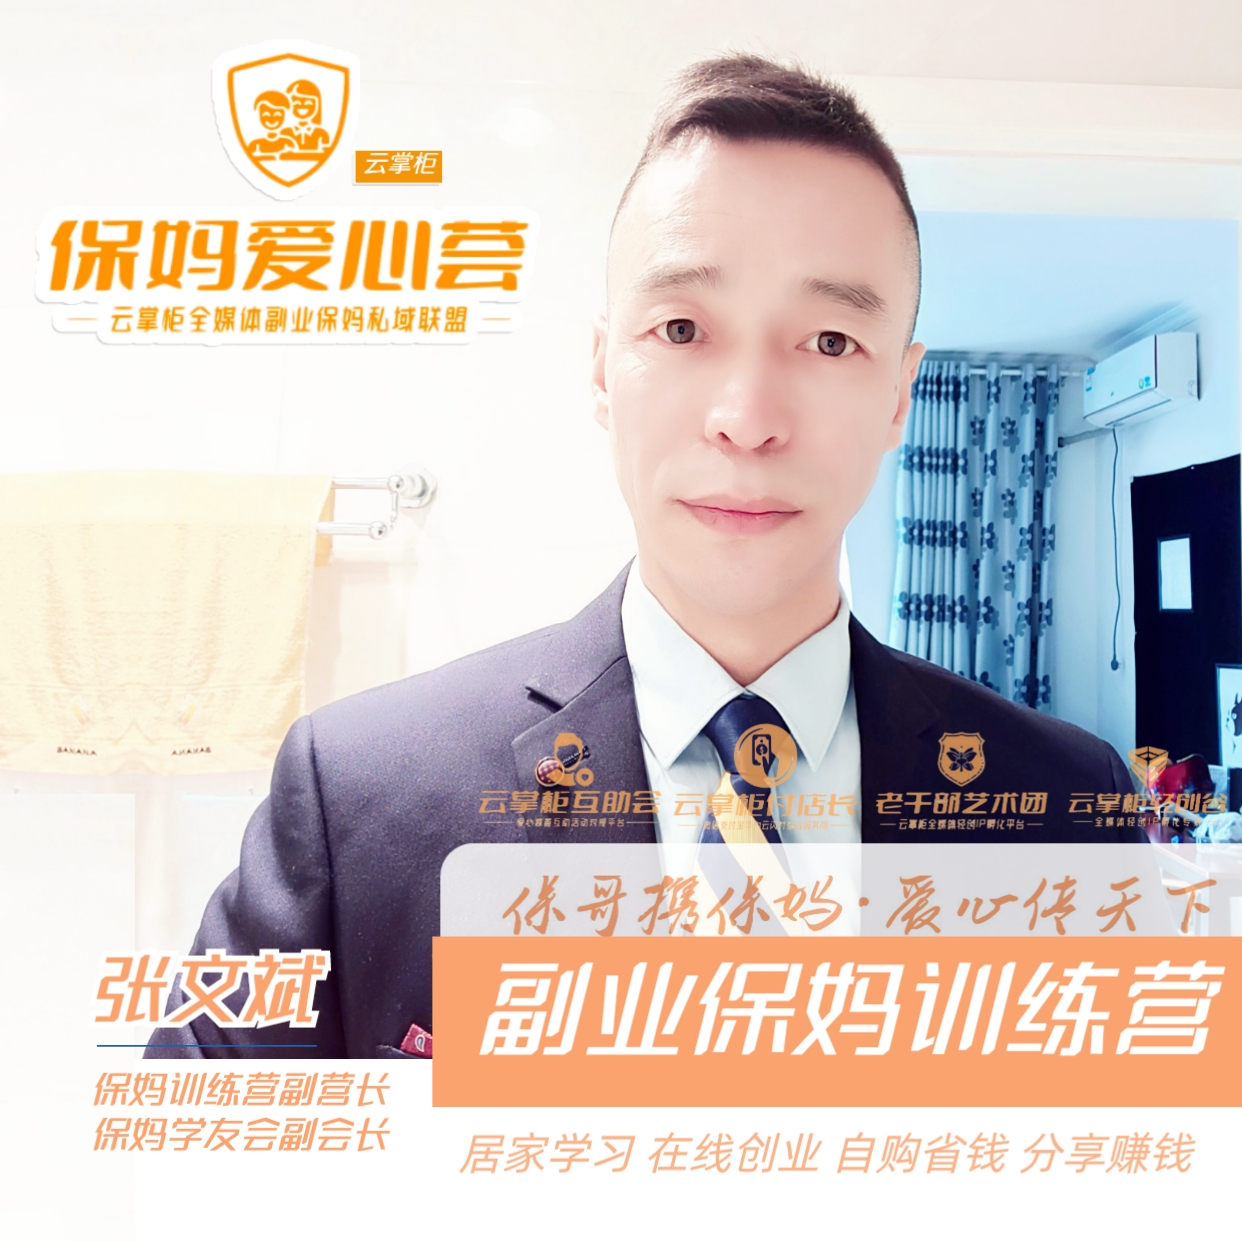 张文斌|微分享经济运营师